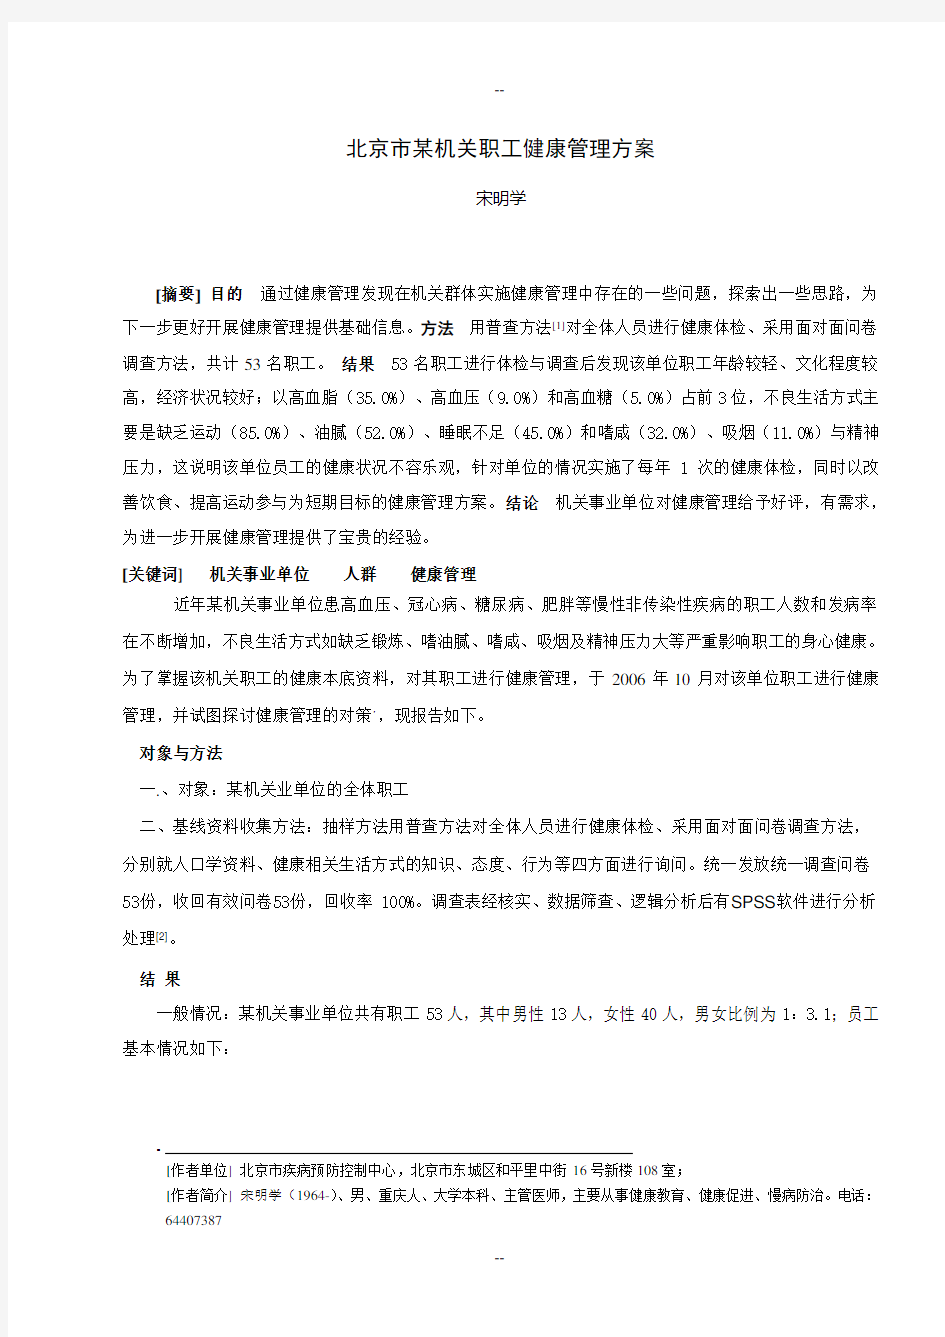 北京市某机关职工健康管理方案